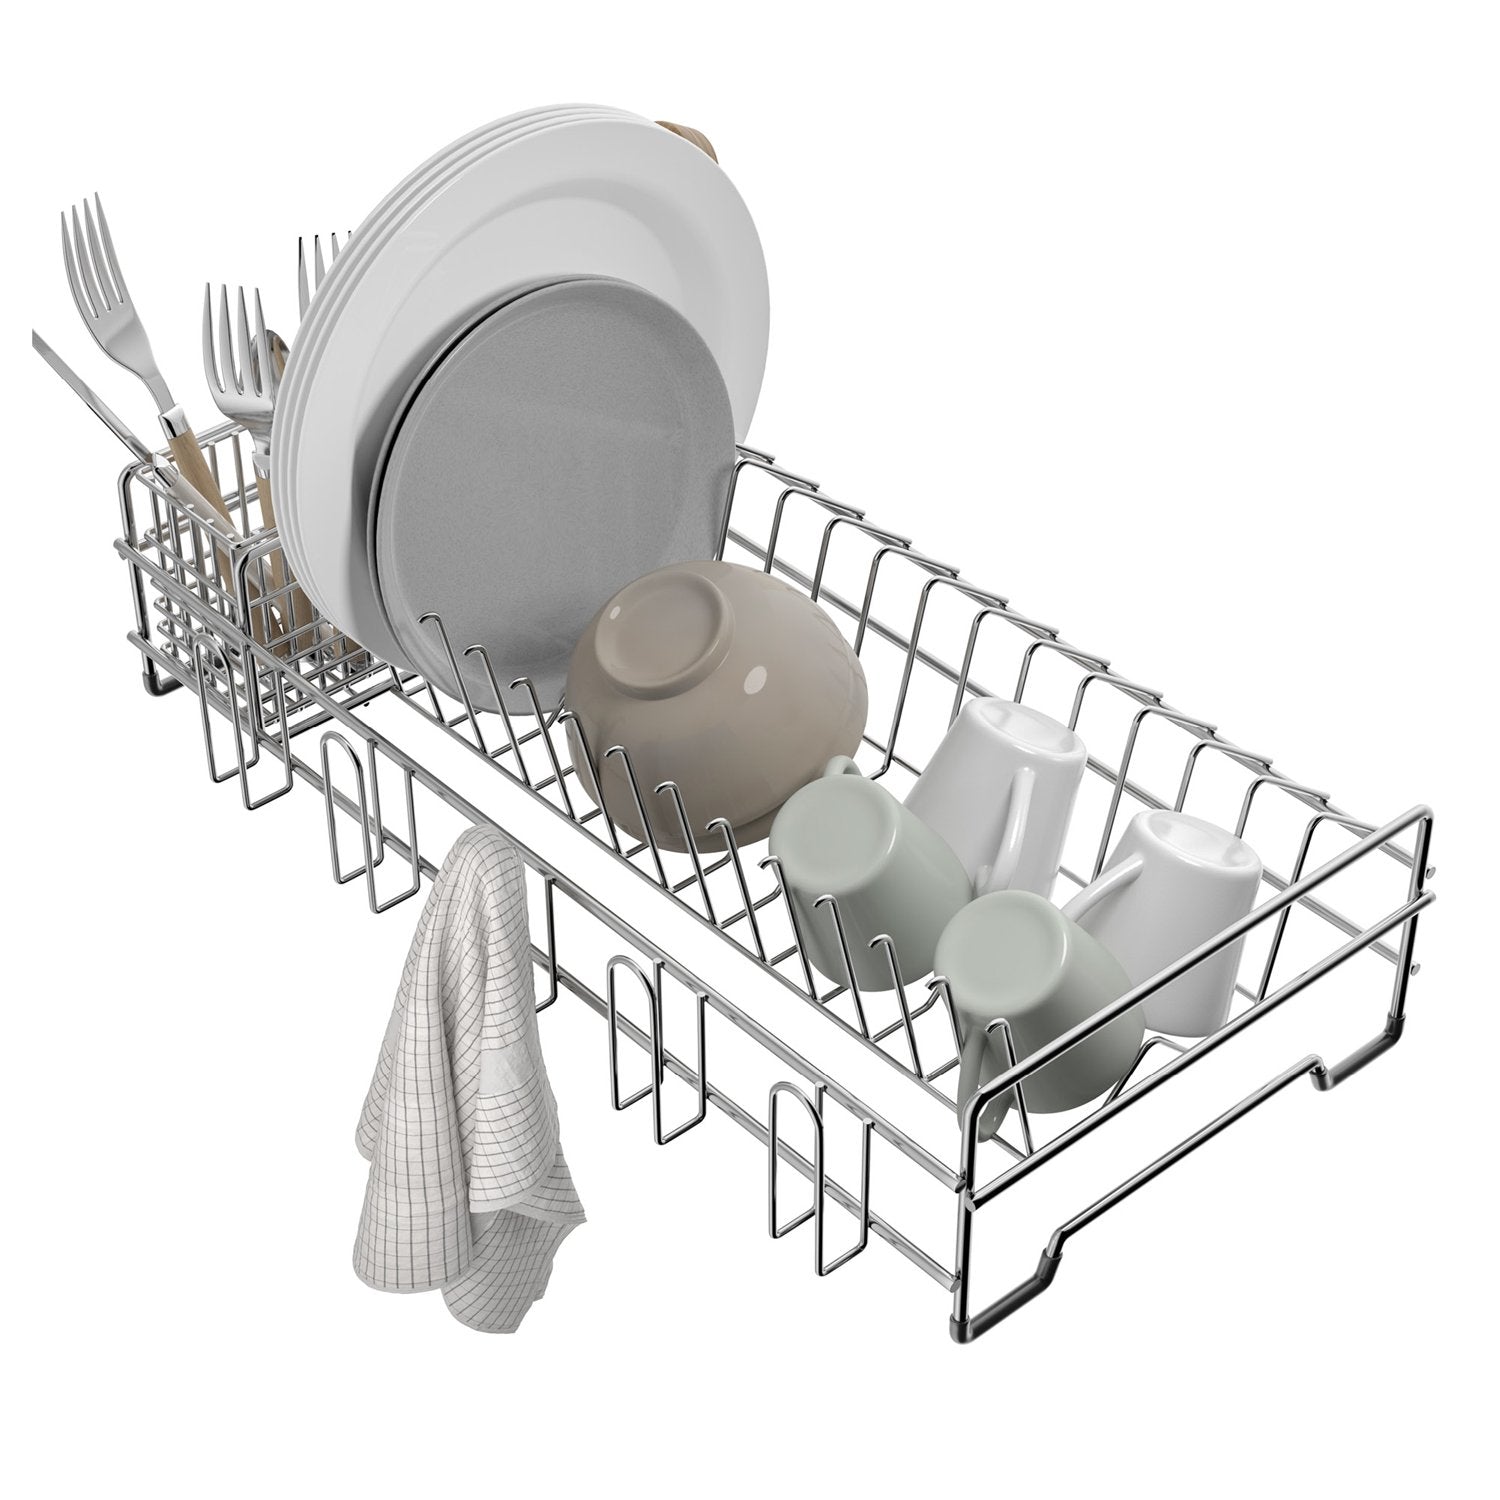 KRAUS Stainless Steel Workstation Sink Dish & Utensil Drying Rack —  DirectSinks